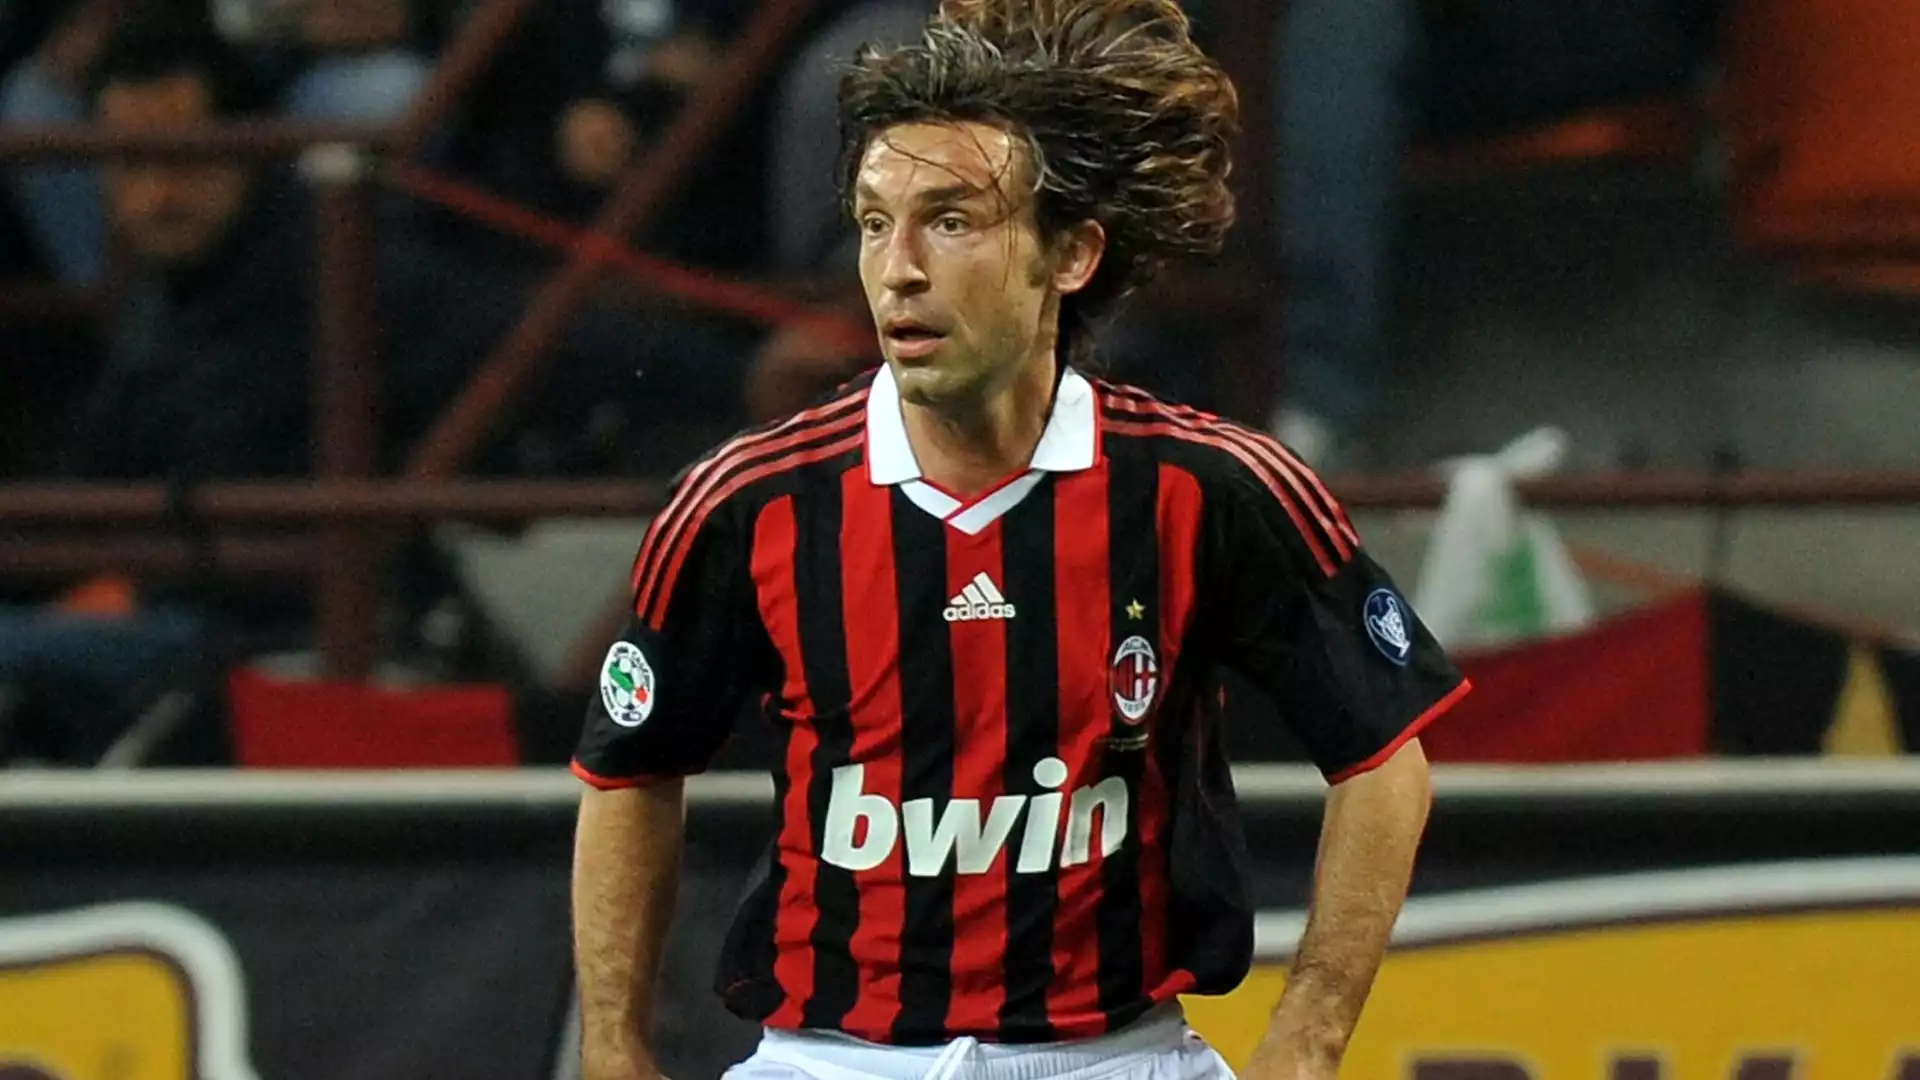 Andrea Pirlo (centrocampista, Italia): nato il 19 maggio 1979